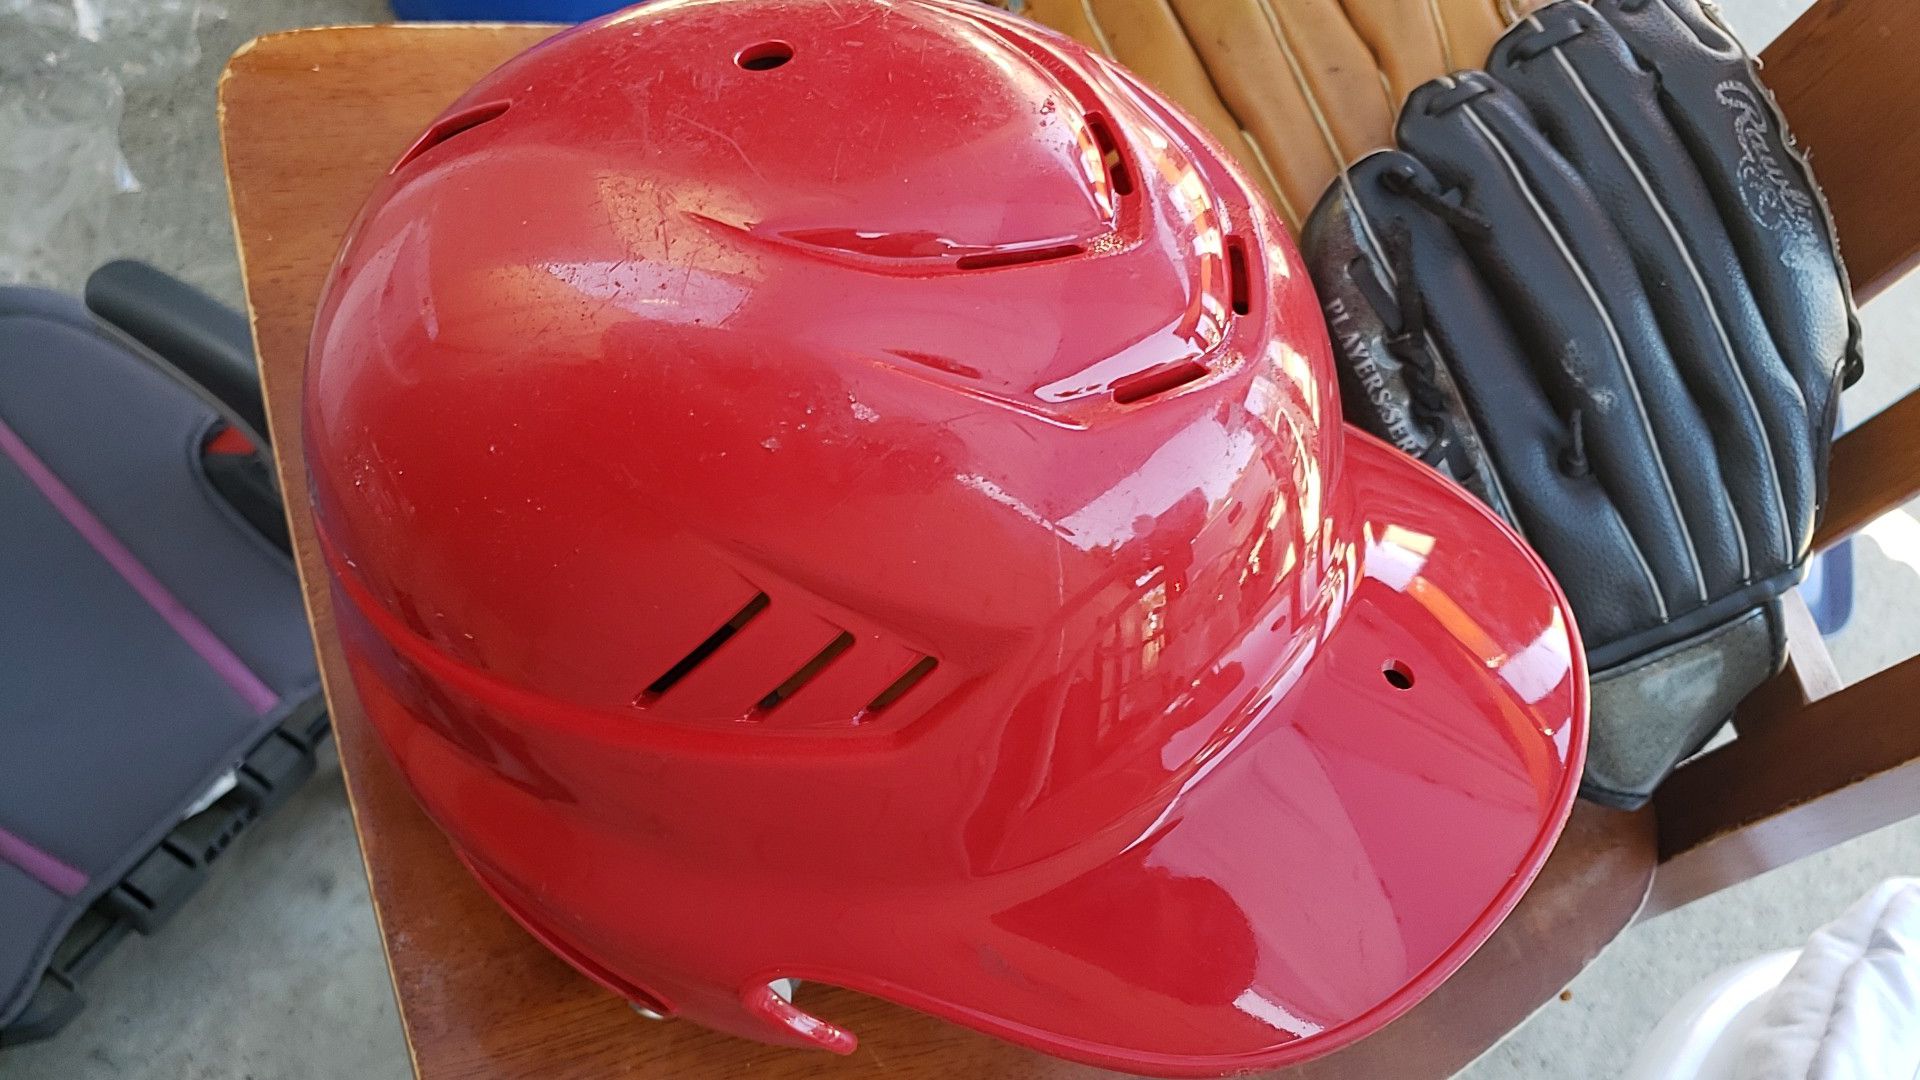 Baseball helmet and gloves